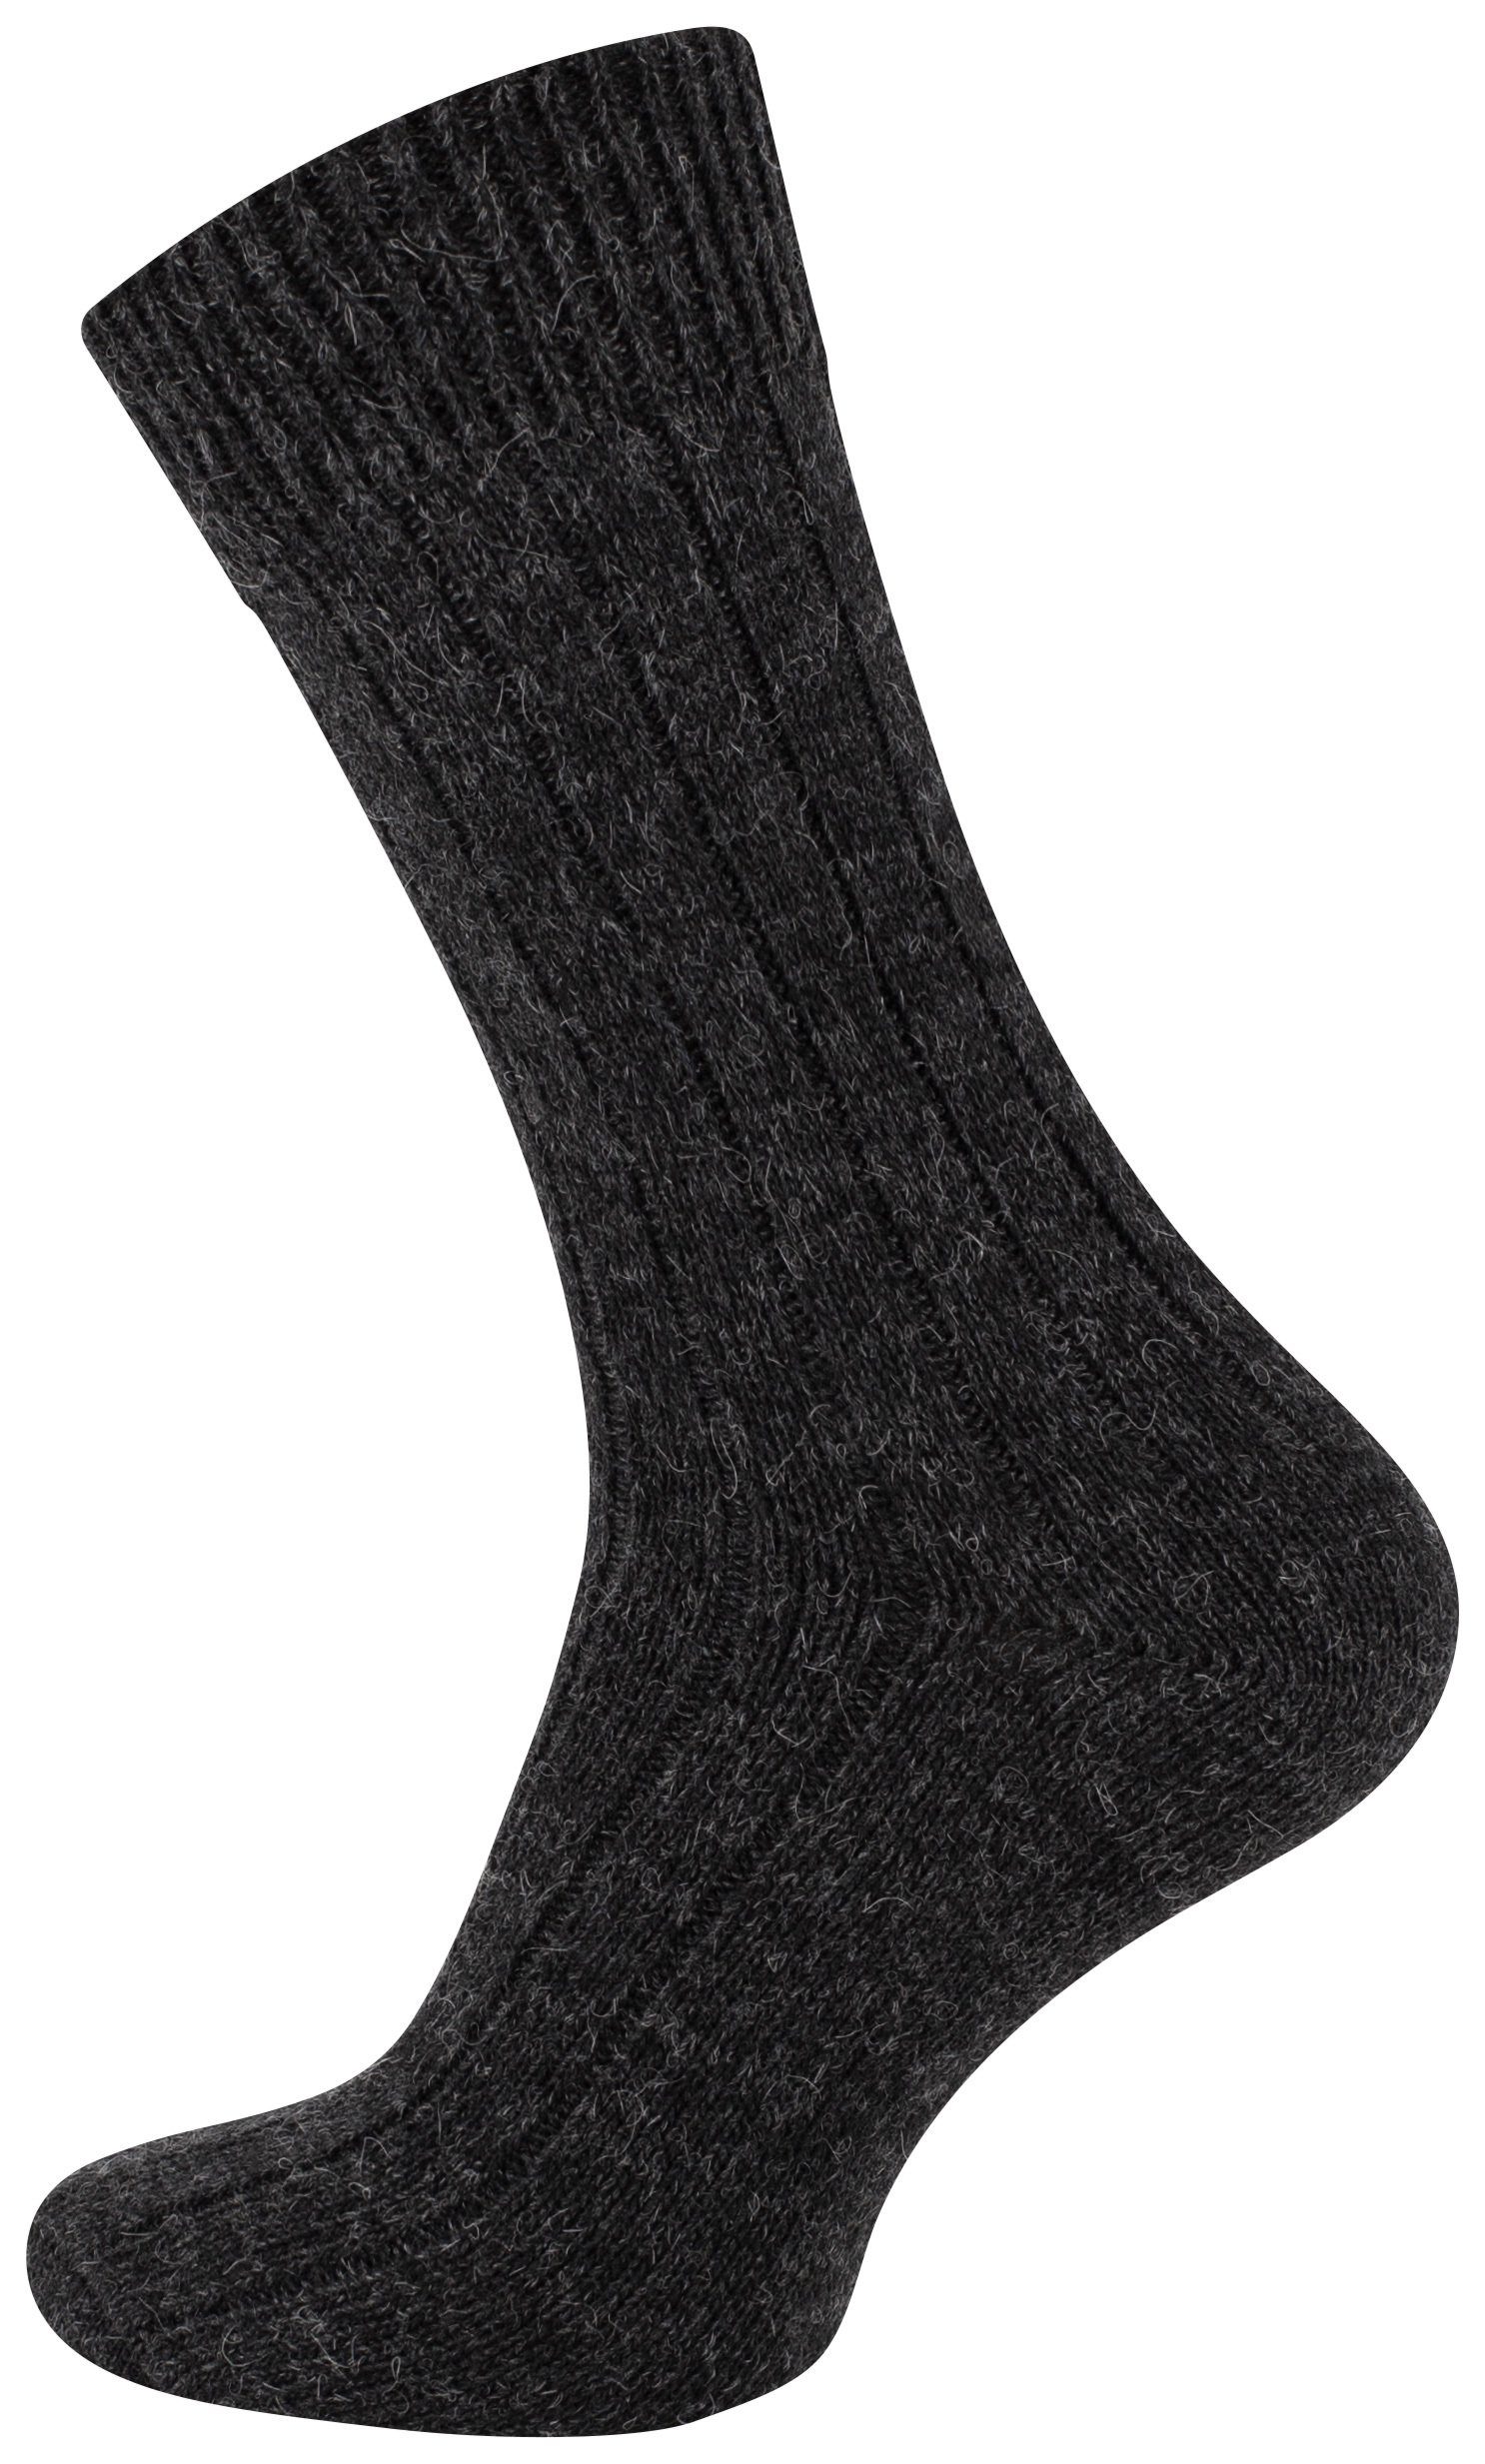 Cotton Socken ökologisch Socken gefärbt Alpaka Prime® anthrazit/grau und (2-Paar) vorgewaschen